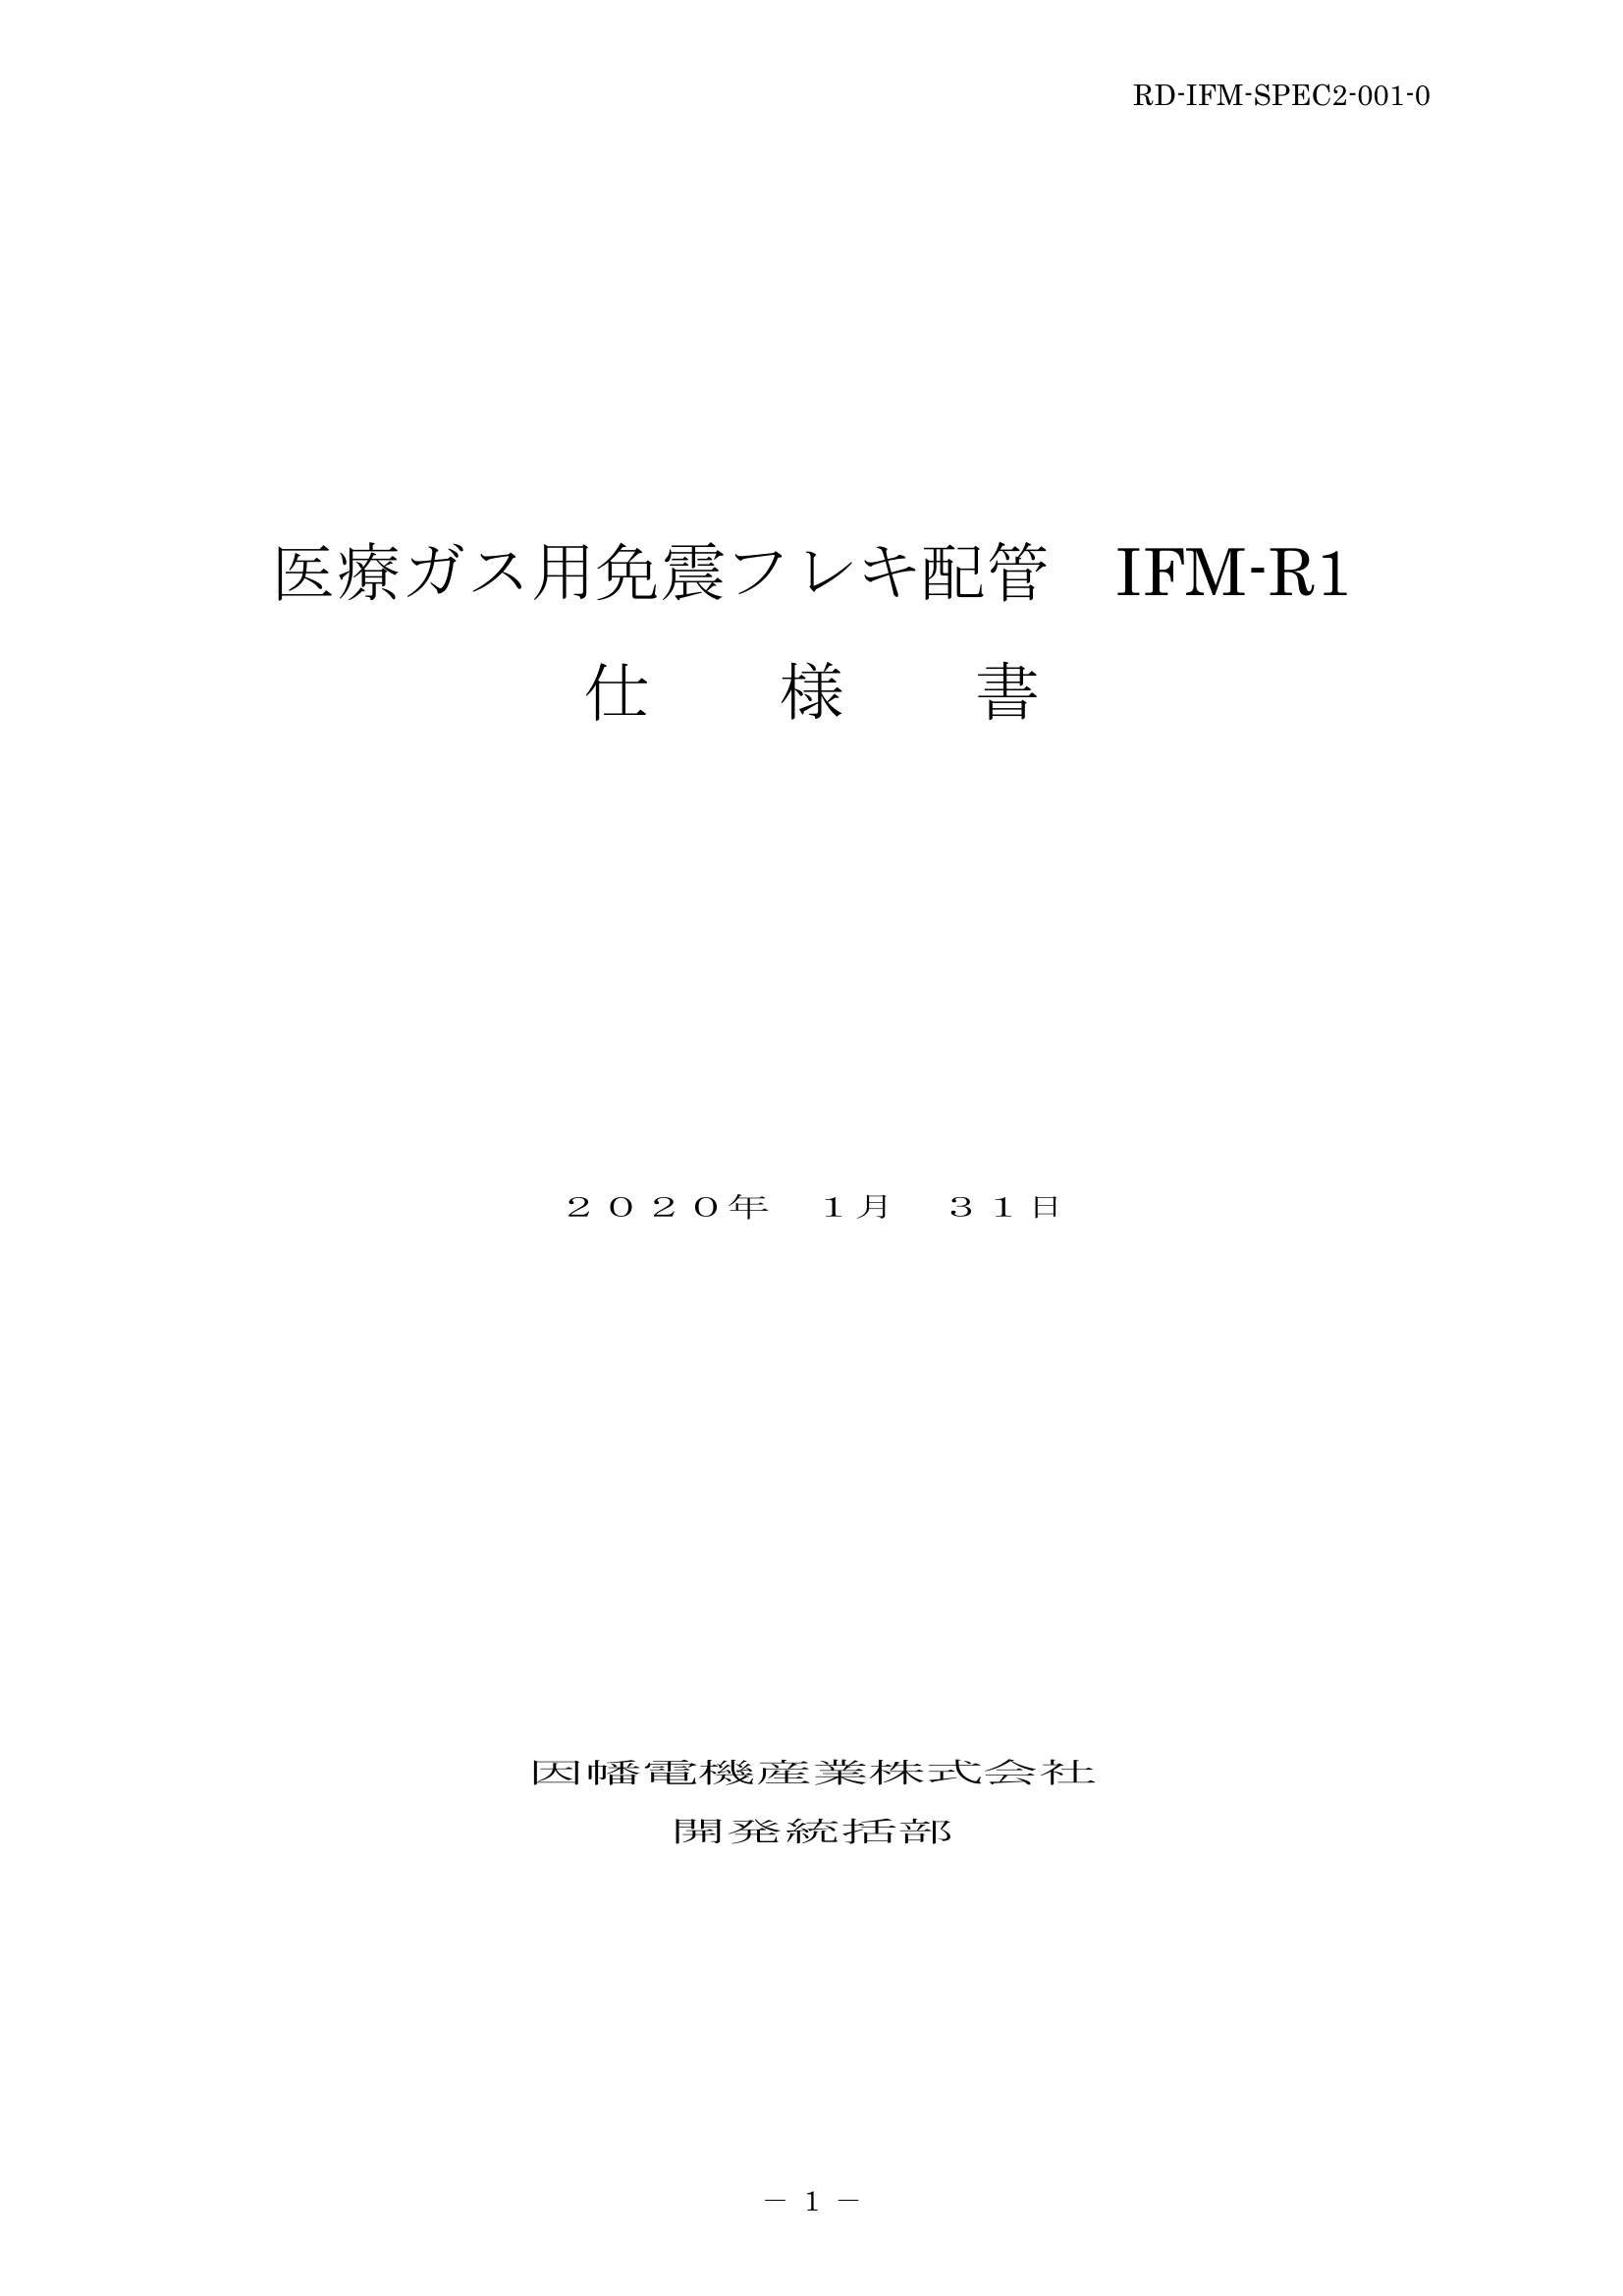 IFM_仕様書_20200131.pdf